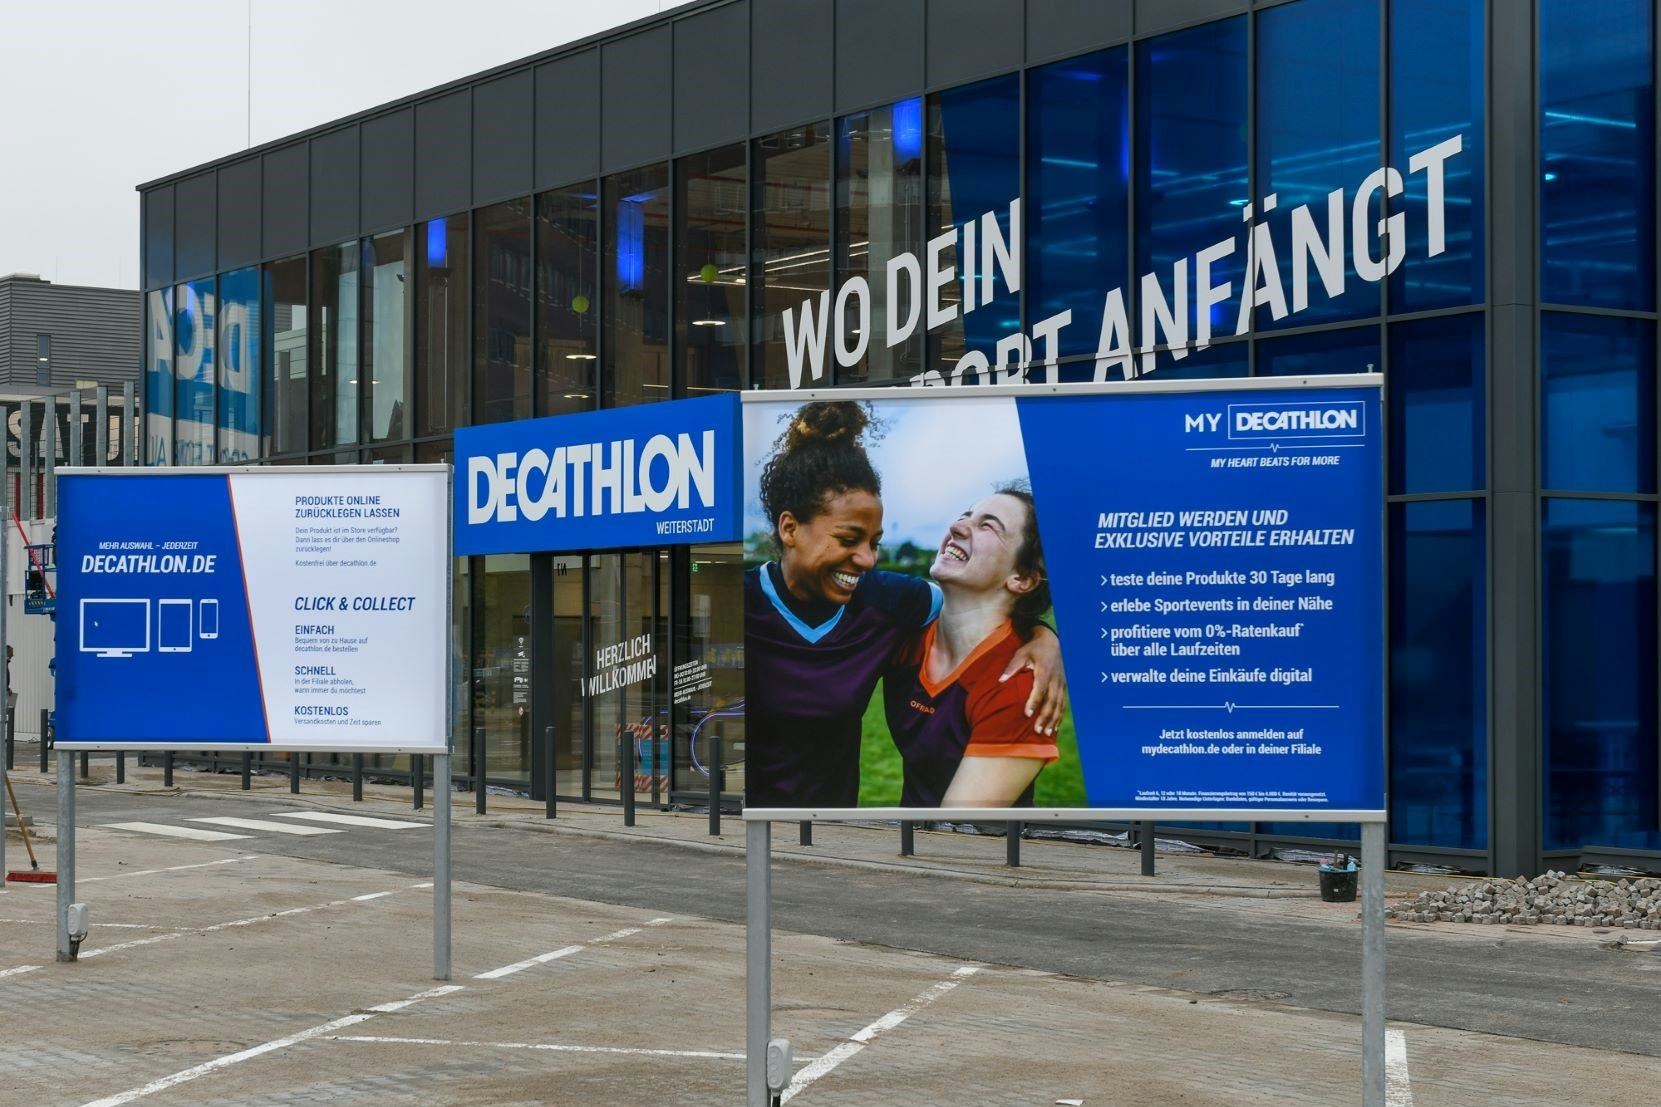 Decathlon Germany breaks €1 billion sales barrier in 2022